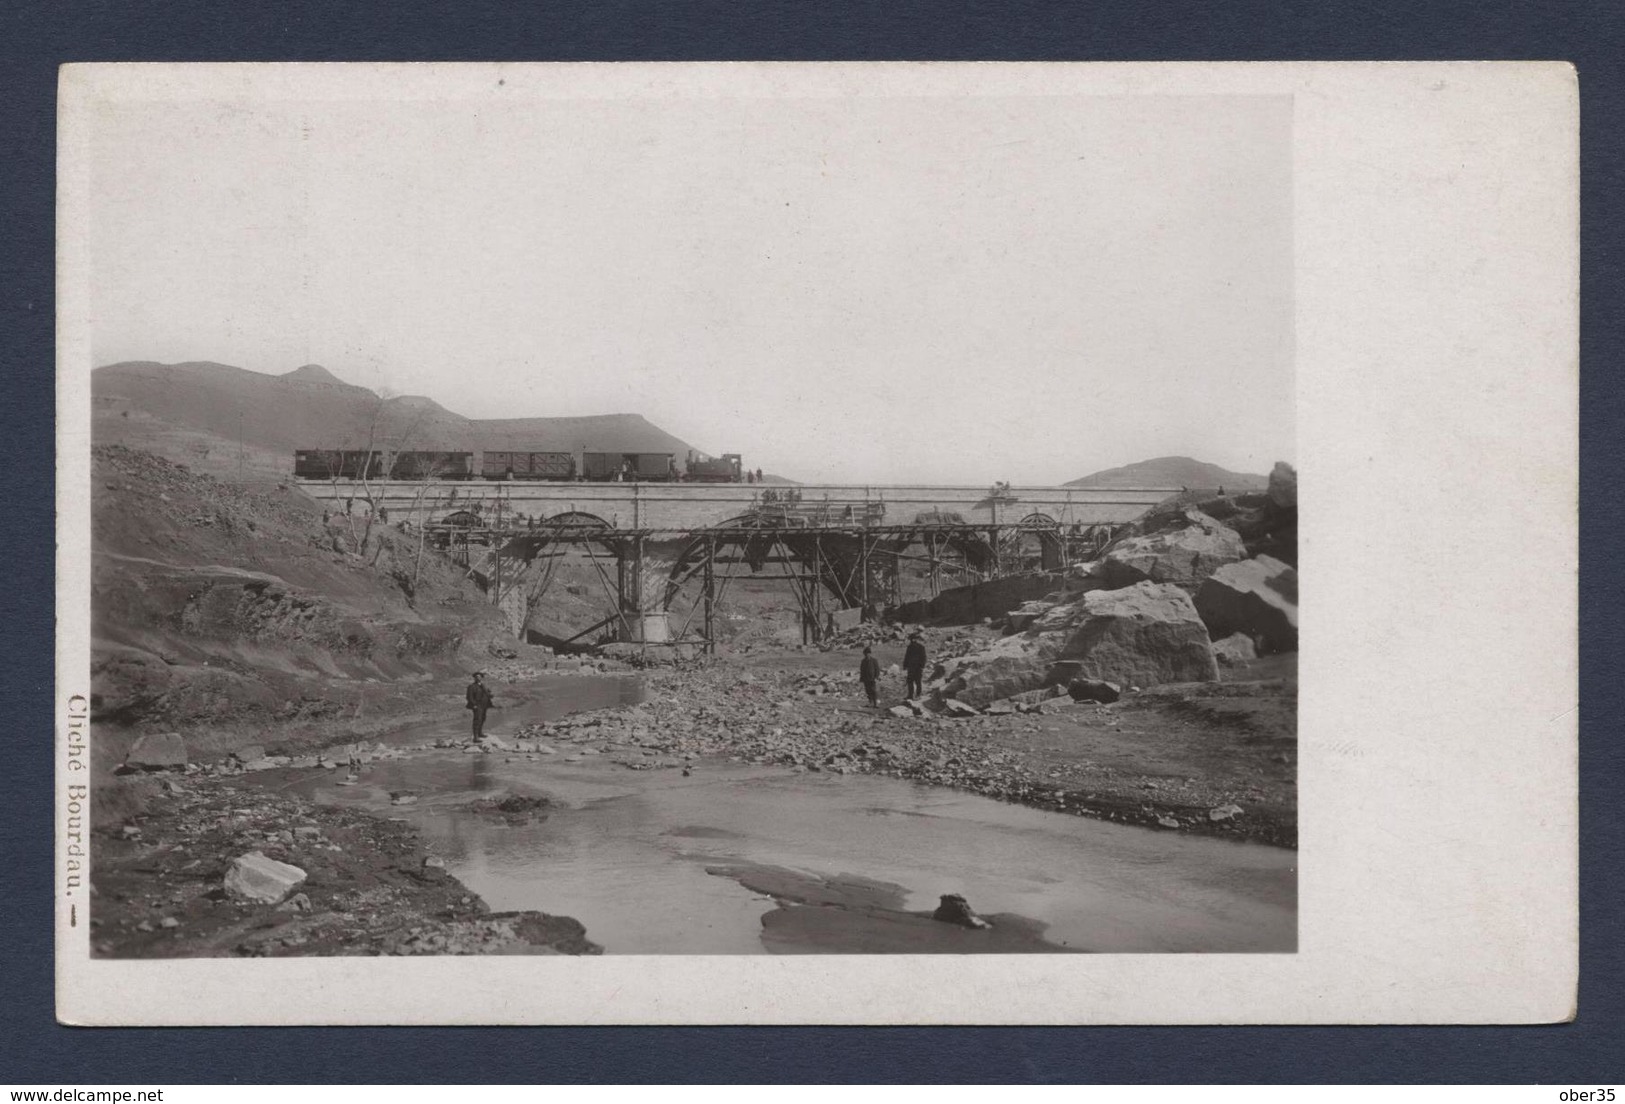 construction d'une ligne de chemin de fer en chine vers 1910. lot de 17 photos cartespostales.